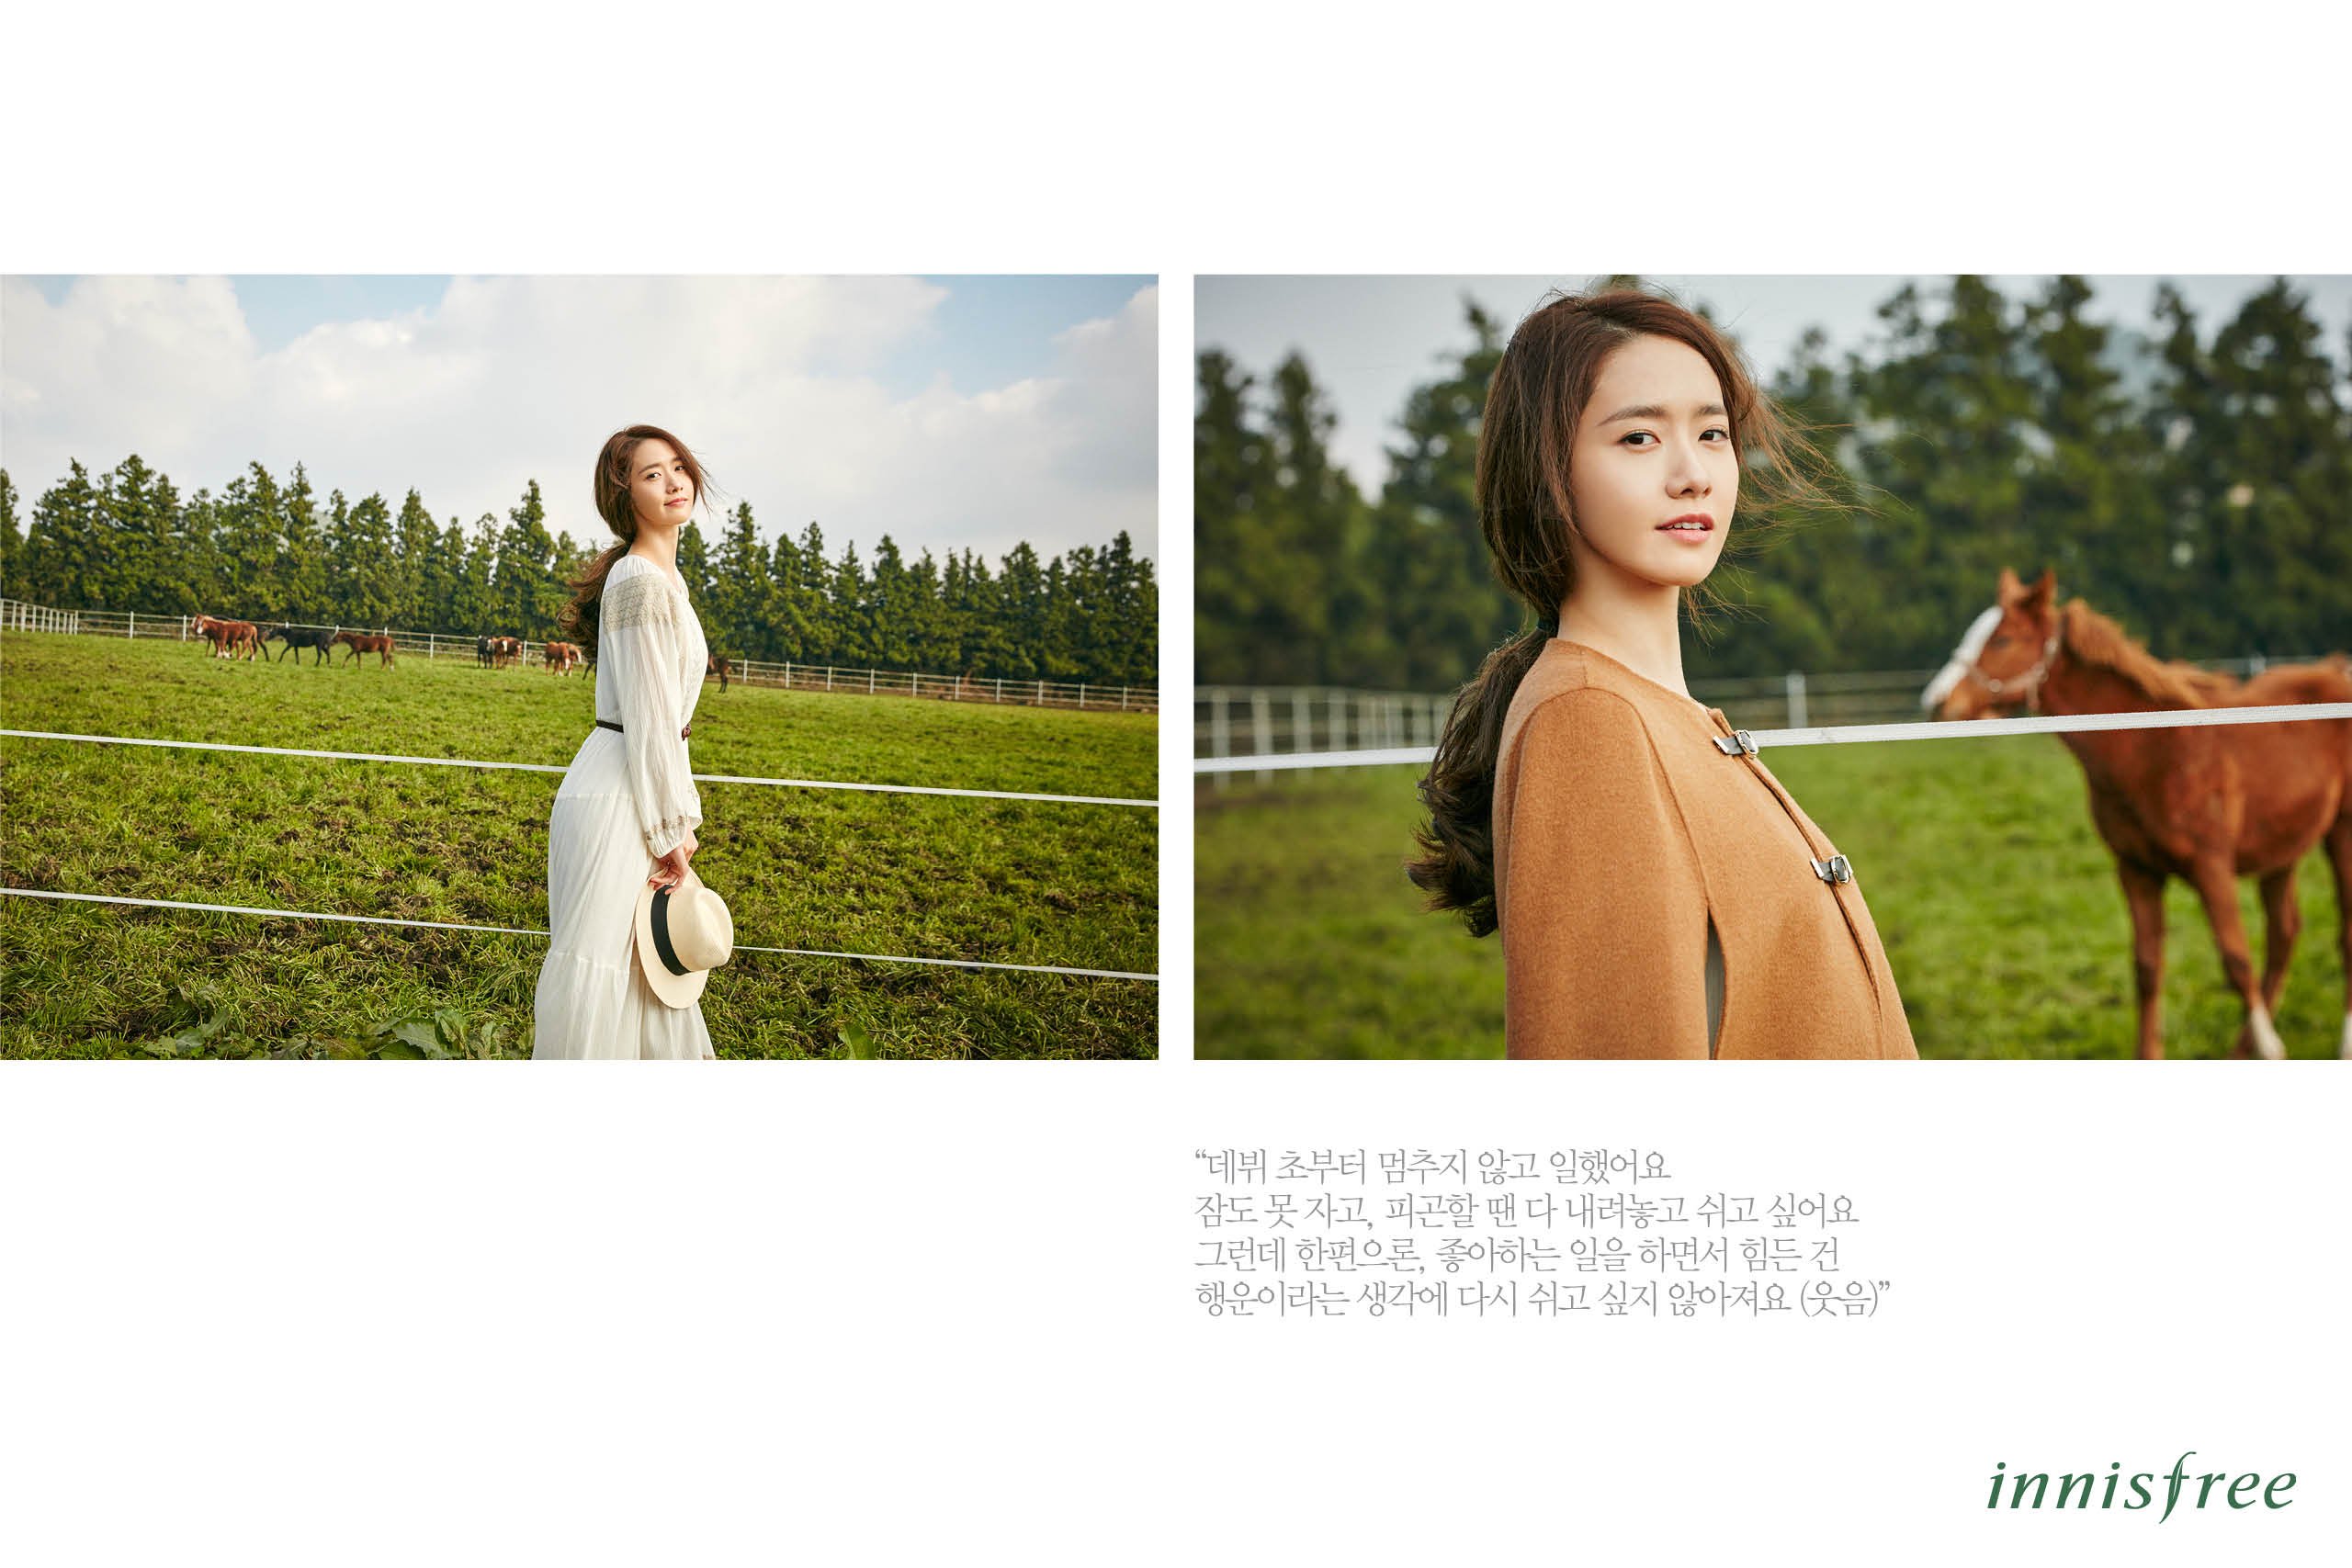 [OTHER][21-07-2012]Hình ảnh mới nhất từ thương hiệu "Innisfree" của YoonA - Page 14 7PCxsMK8aw-3000x3000